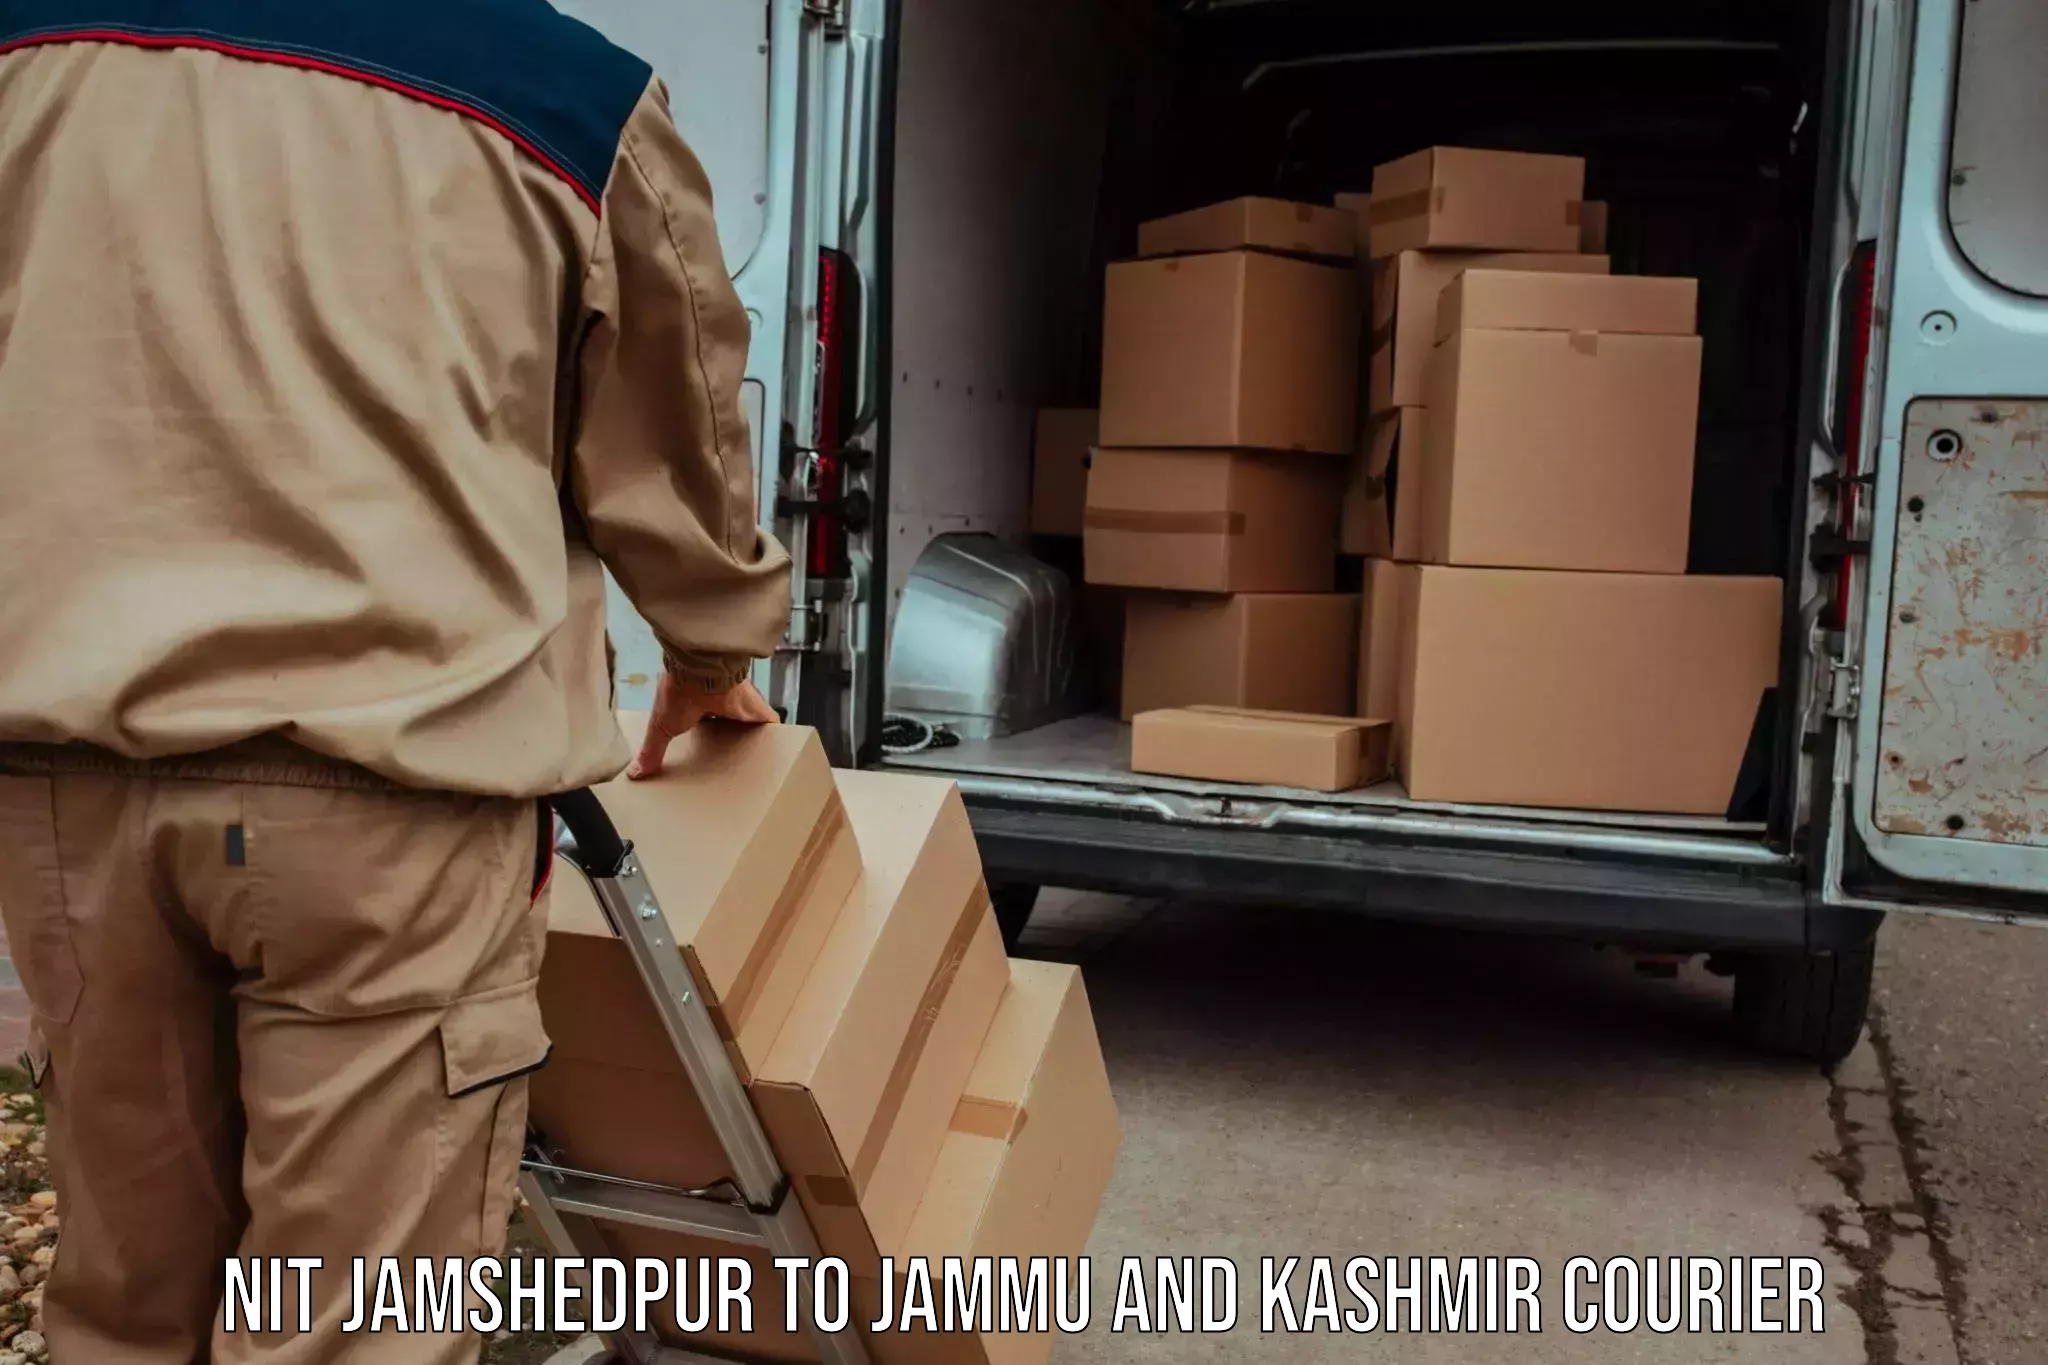 Cash on delivery service NIT Jamshedpur to University of Kashmir Srinagar